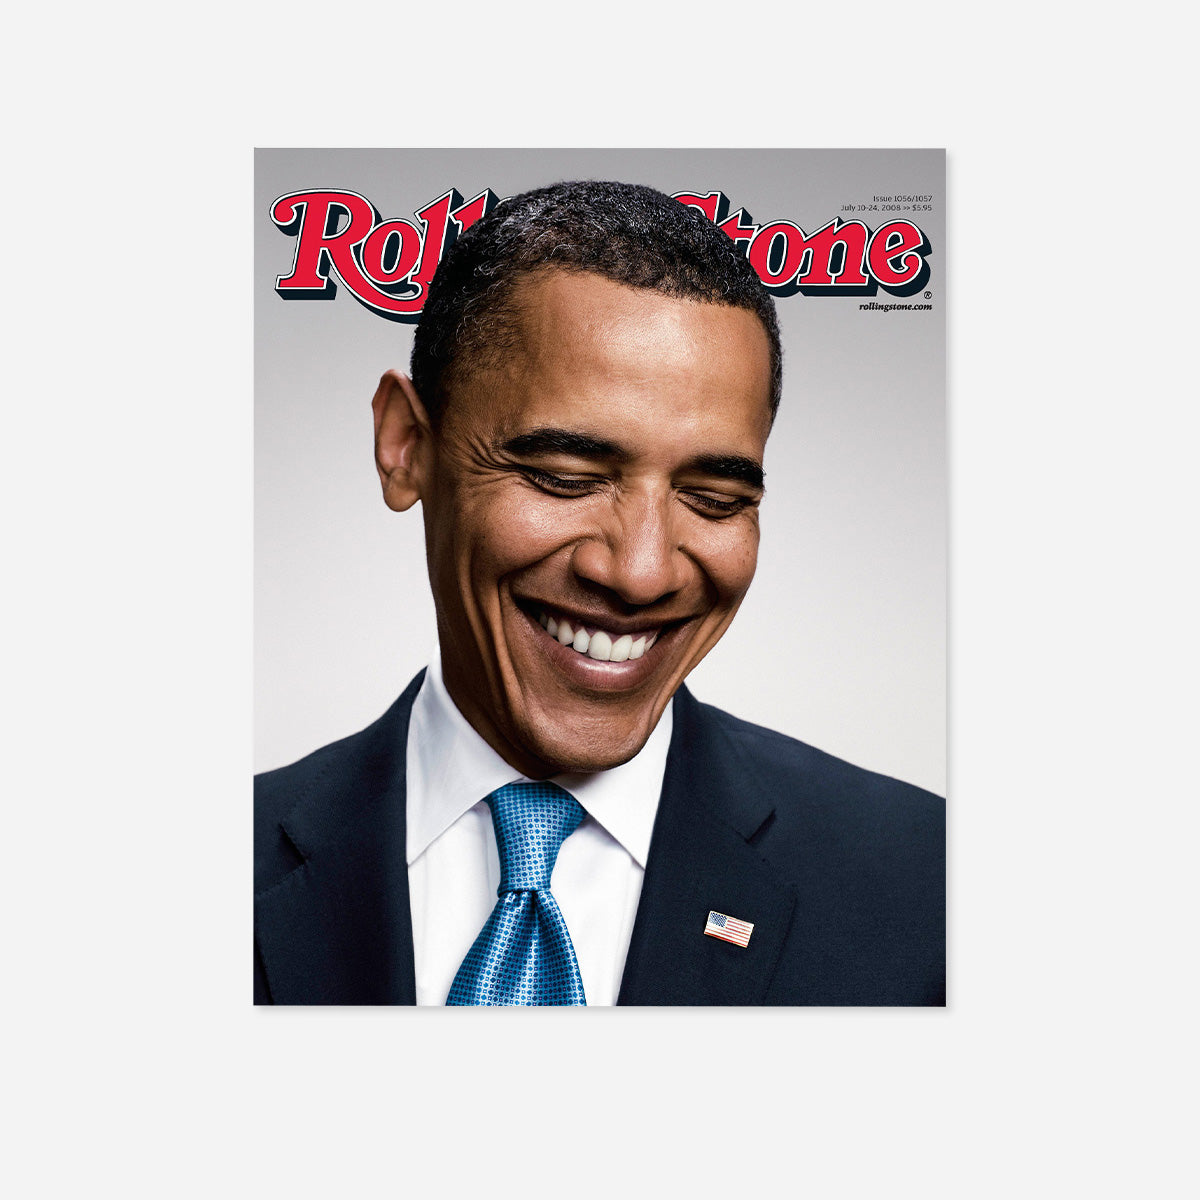 Rolling Stone Magazine July 10, 2008 Featuring Barack Obama (Issue 1056)